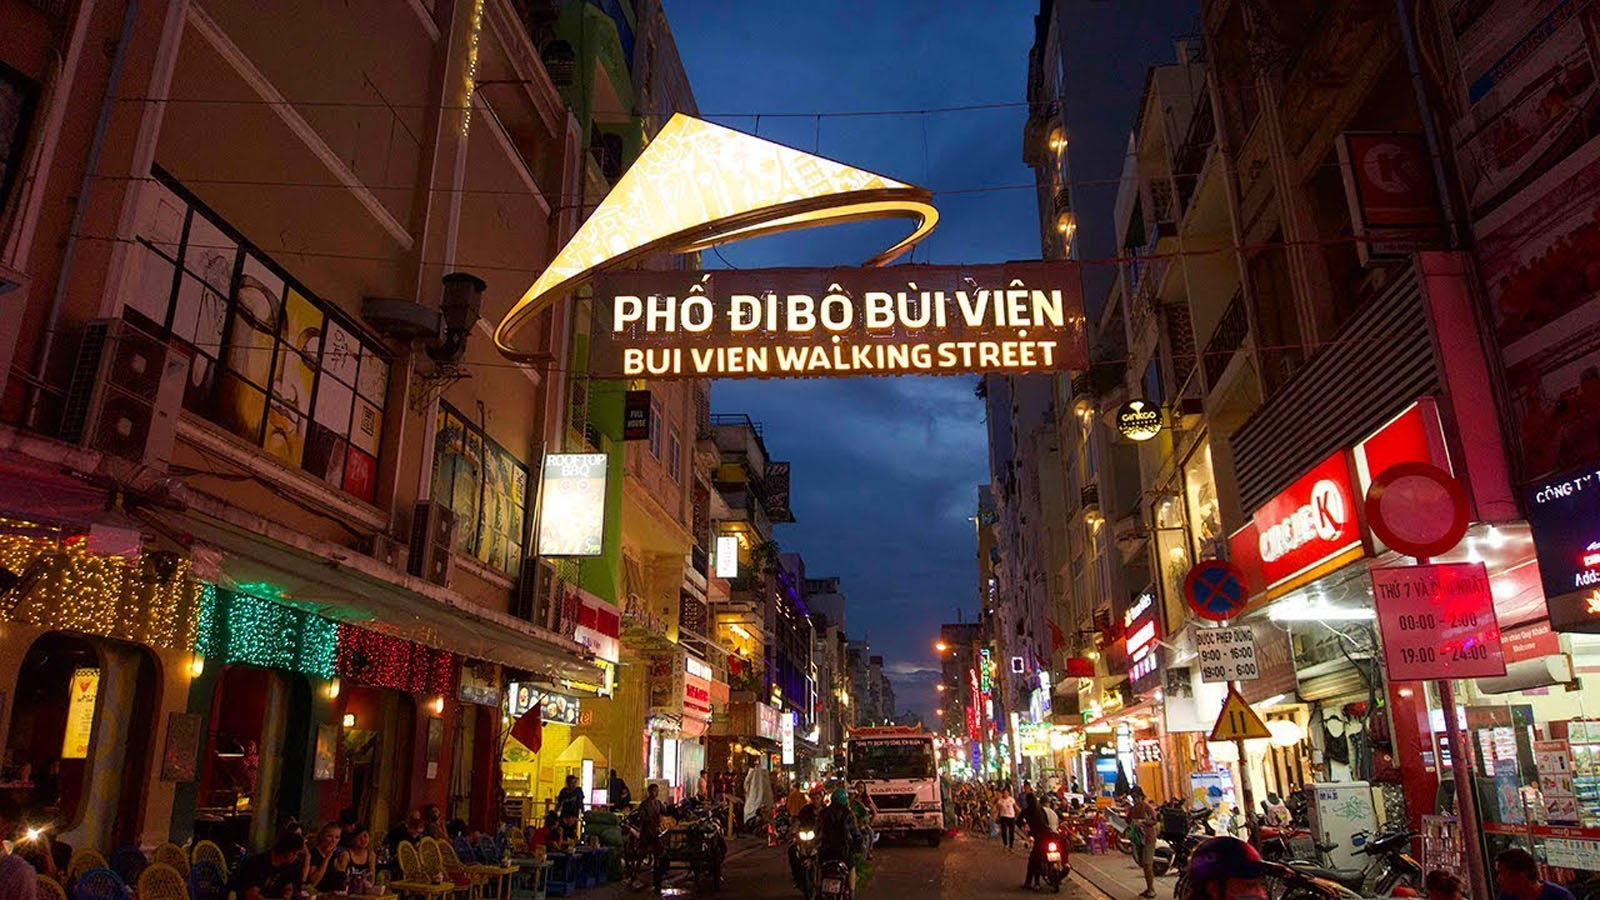 Khu phố đi bộ Bùi Viện - Địa điểm du lịch mới ở Sài Gòn (Nguồn: Internet)